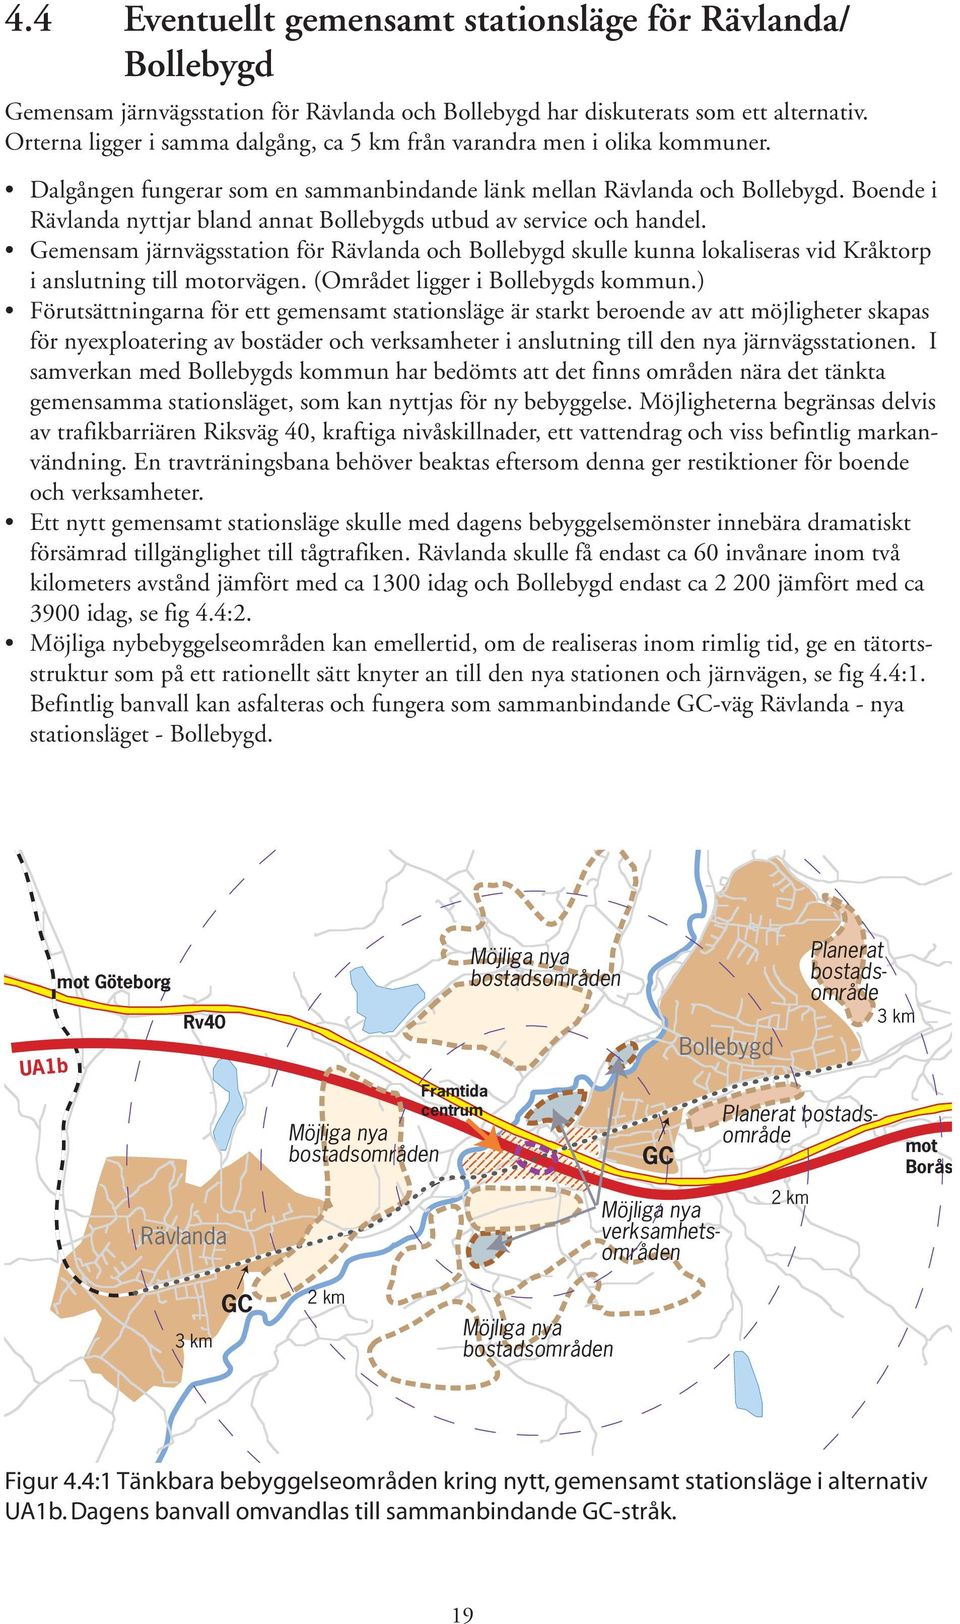 Boende i Rävlanda nyttjar bland annat Bollebygds utbud av service och handel. Gemensam järnvägsstation för Rävlanda och Bollebygd skulle kunna lokaliseras vid Kråktorp i anslutning till motorvägen.